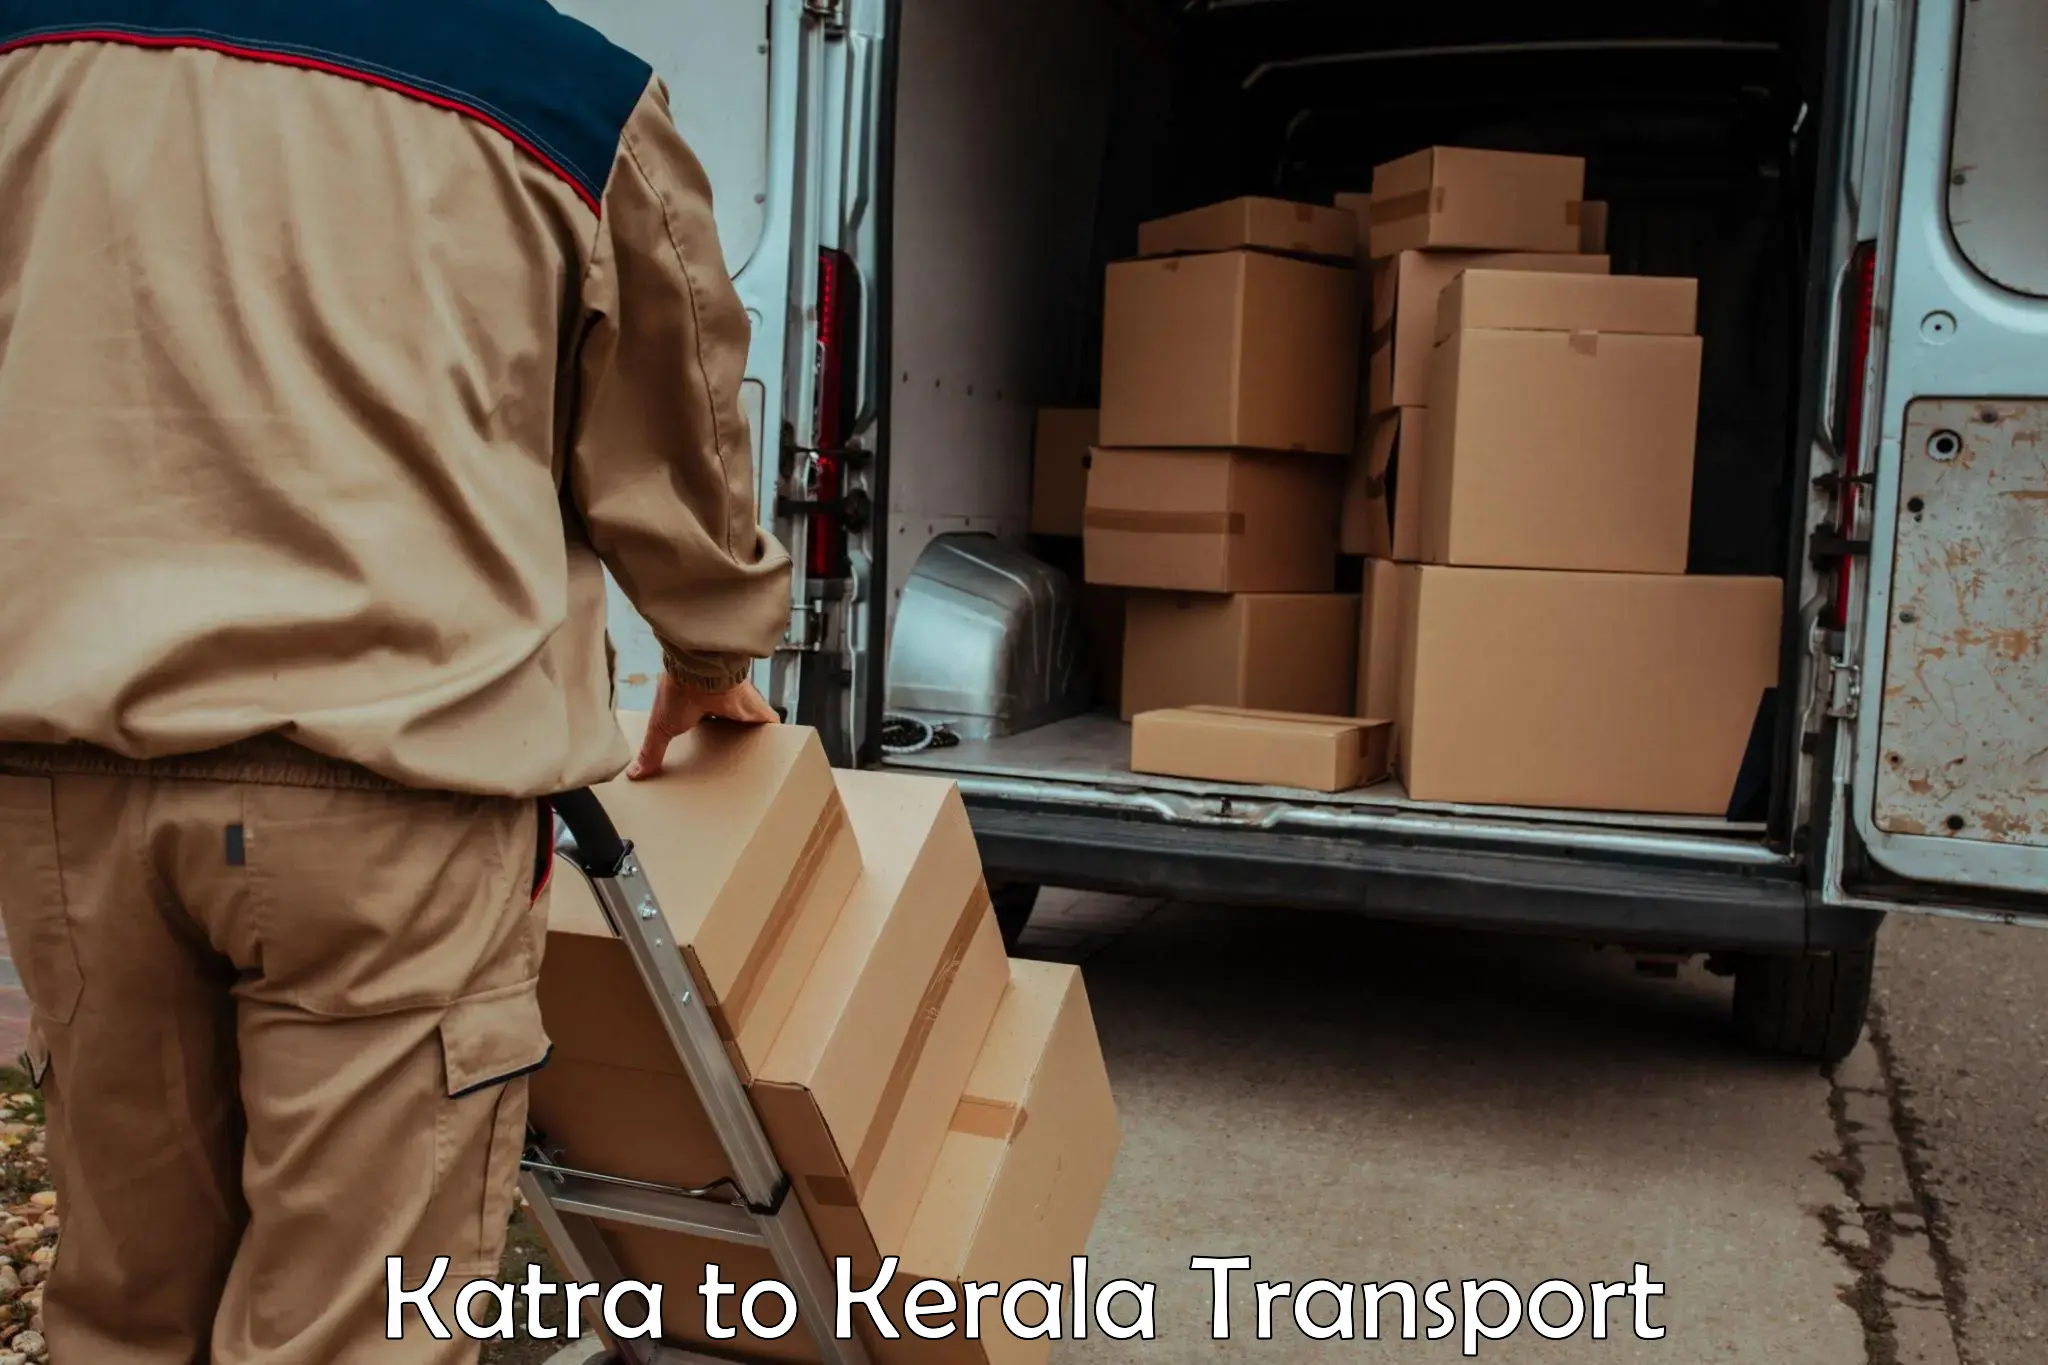 Online transport service Katra to Manjeshwar